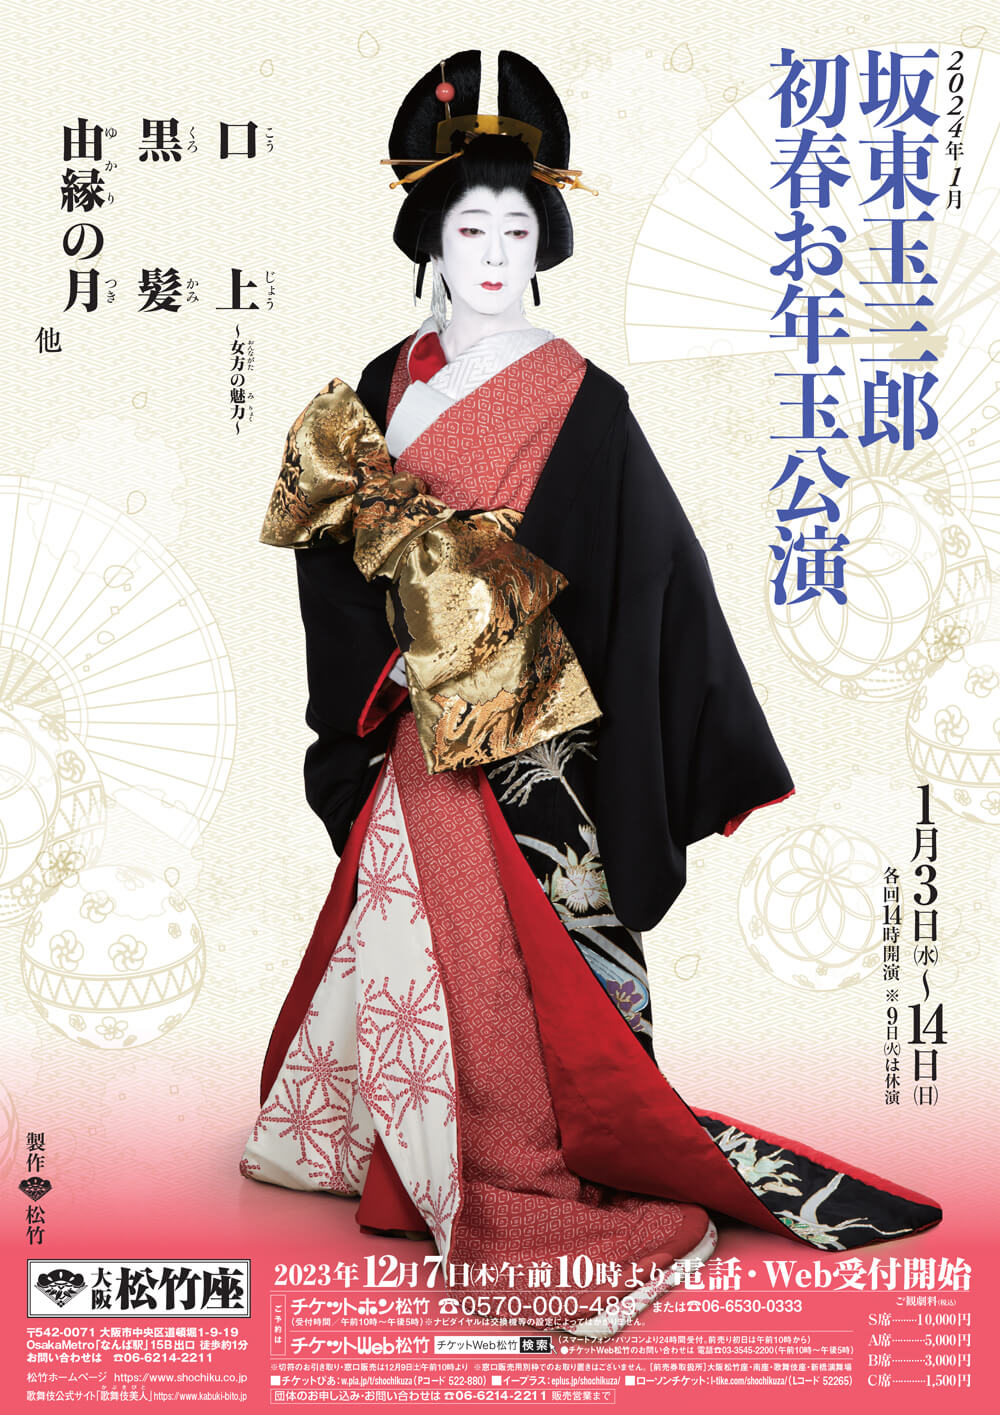 January Program at the Osaka Shochikuza Theatre